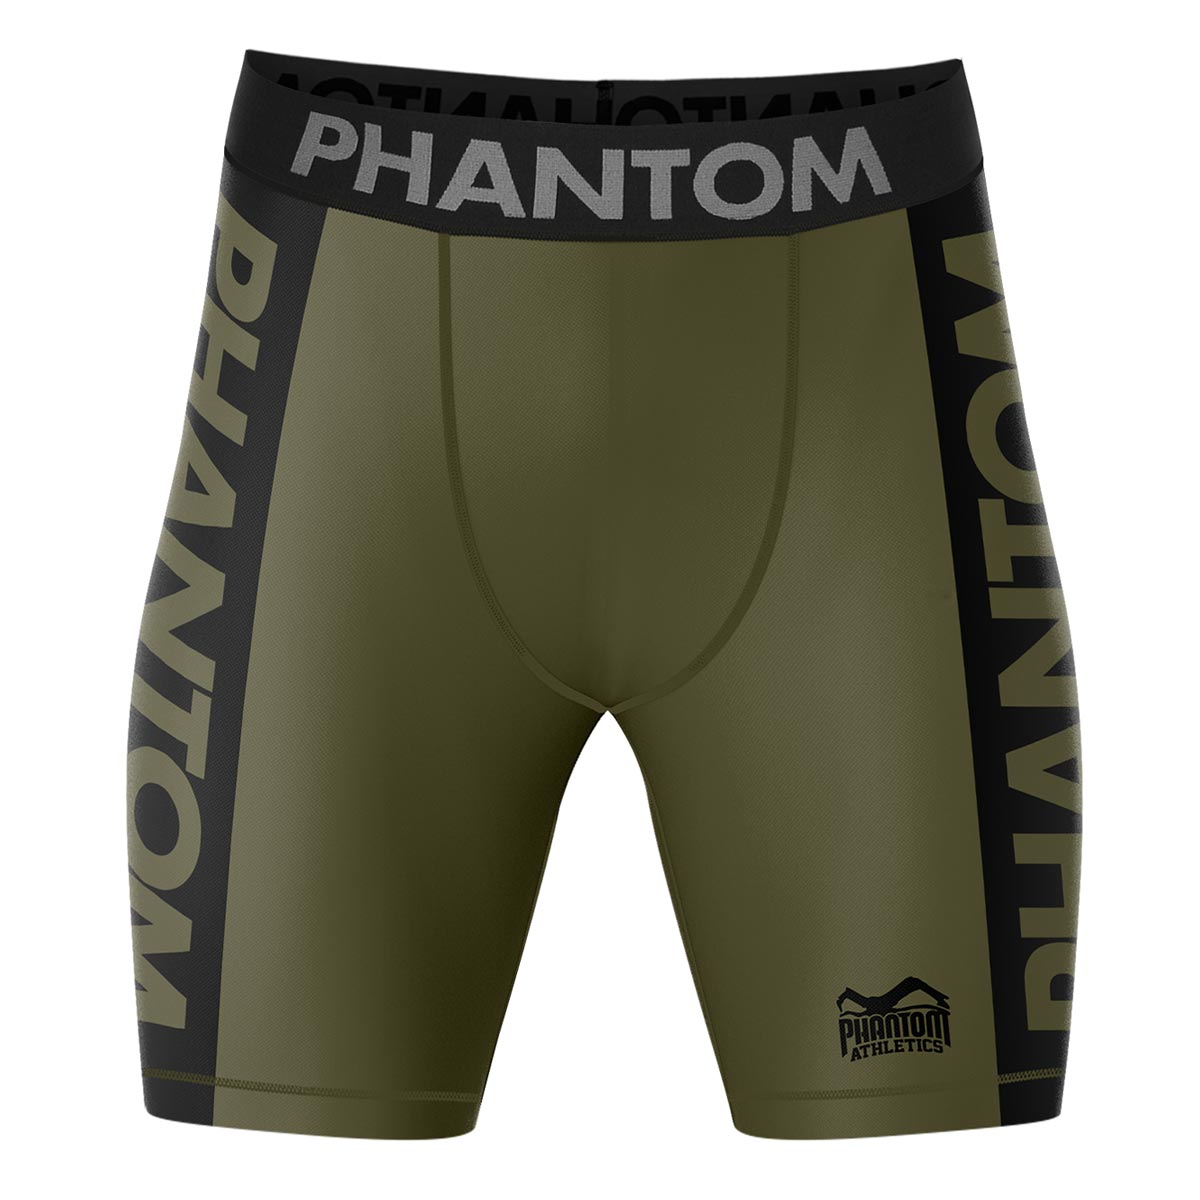 Pantaloncini da combattimento a compressione Phantom in colore militare/verde. Massimo comfort e libertà di movimento. Ideale per le tue arti marziali. 